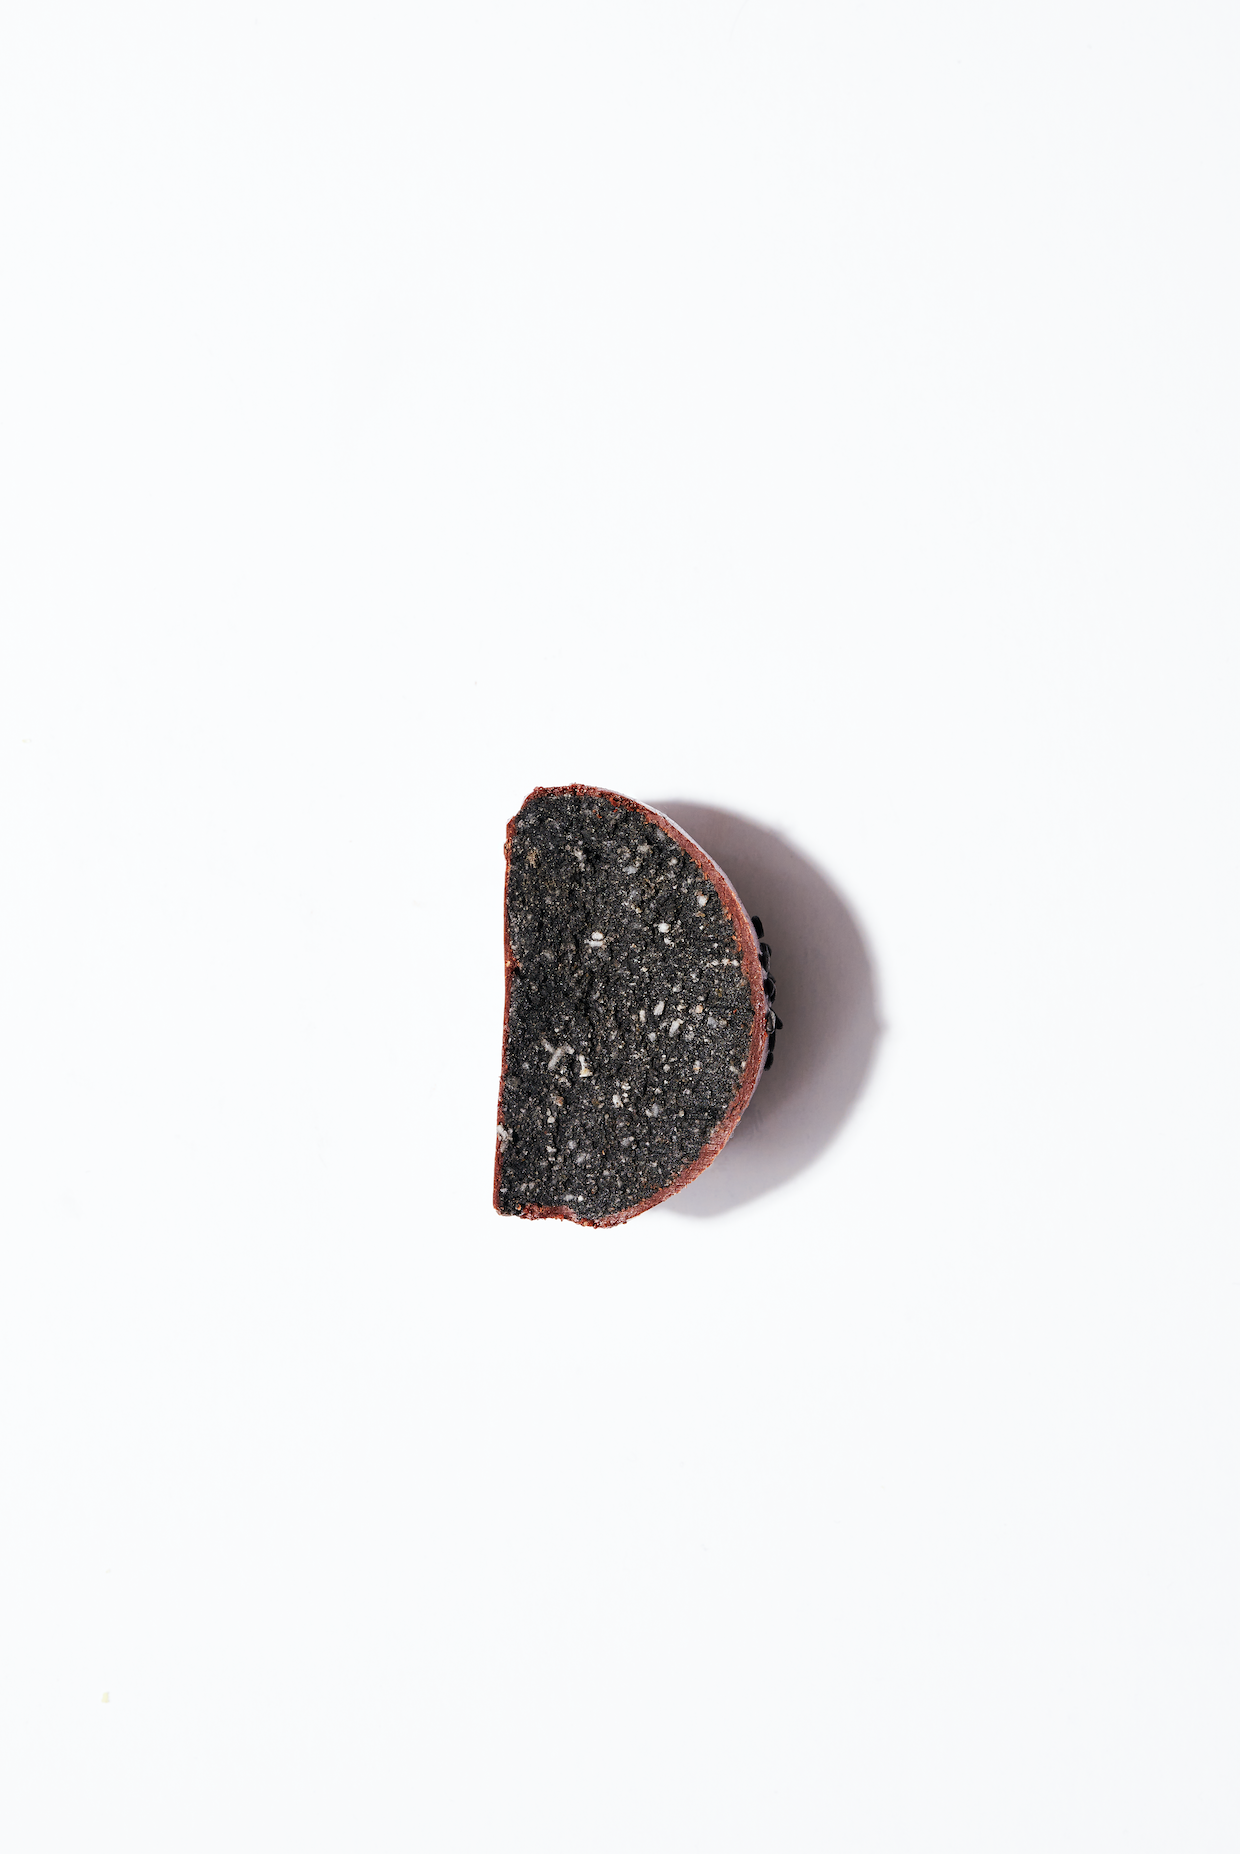 Coffret Sésame noir - Chocolat blanc & noir - 5 lunes